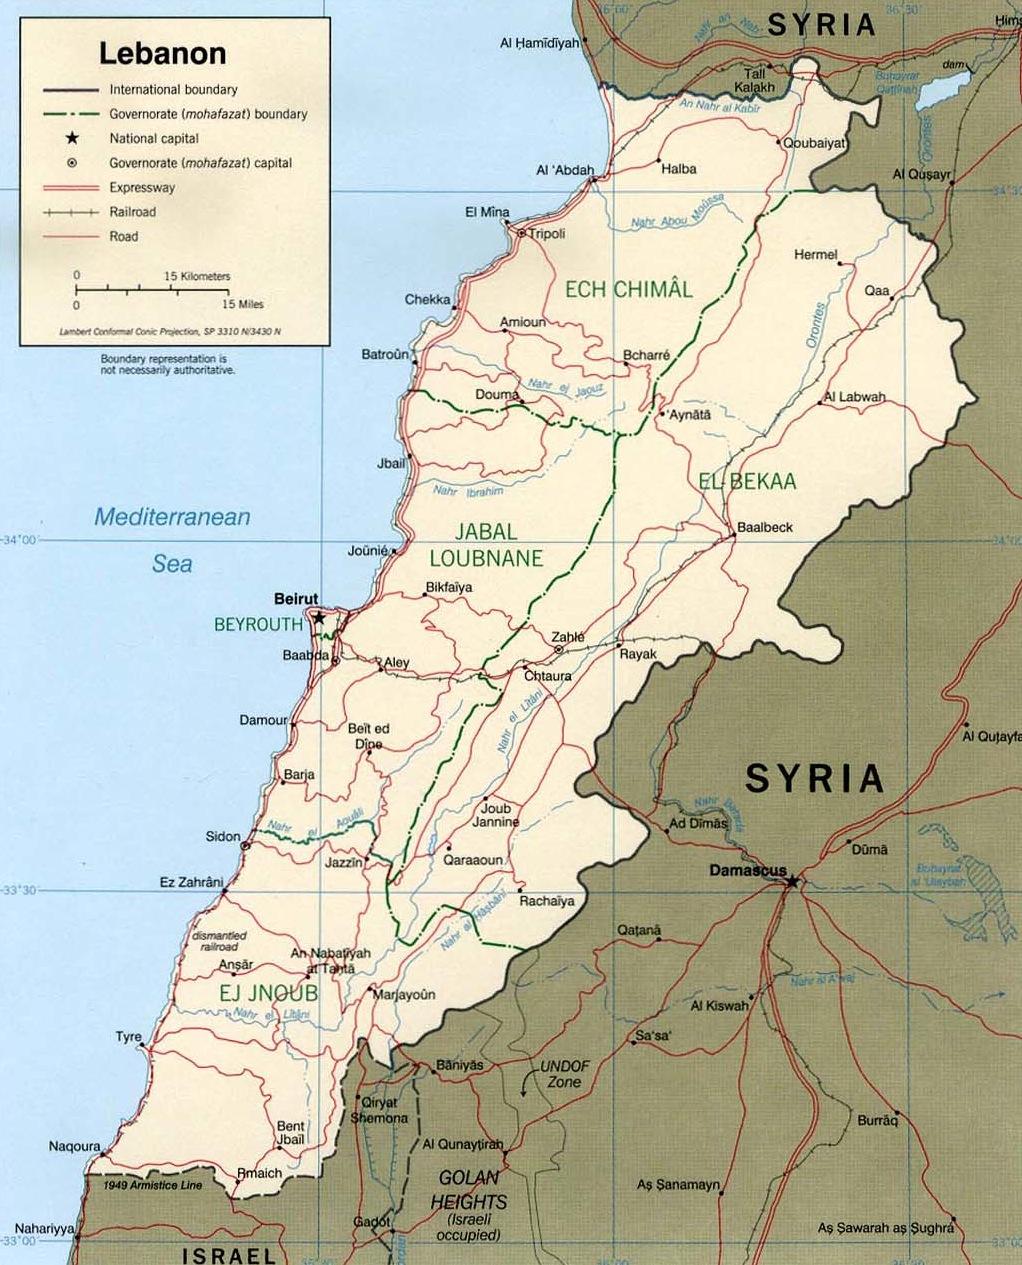 Munhofen Maps Political Map of Lebanon 1 1 Lebanon Maps, Perry-Castañeda Library: Map Collection